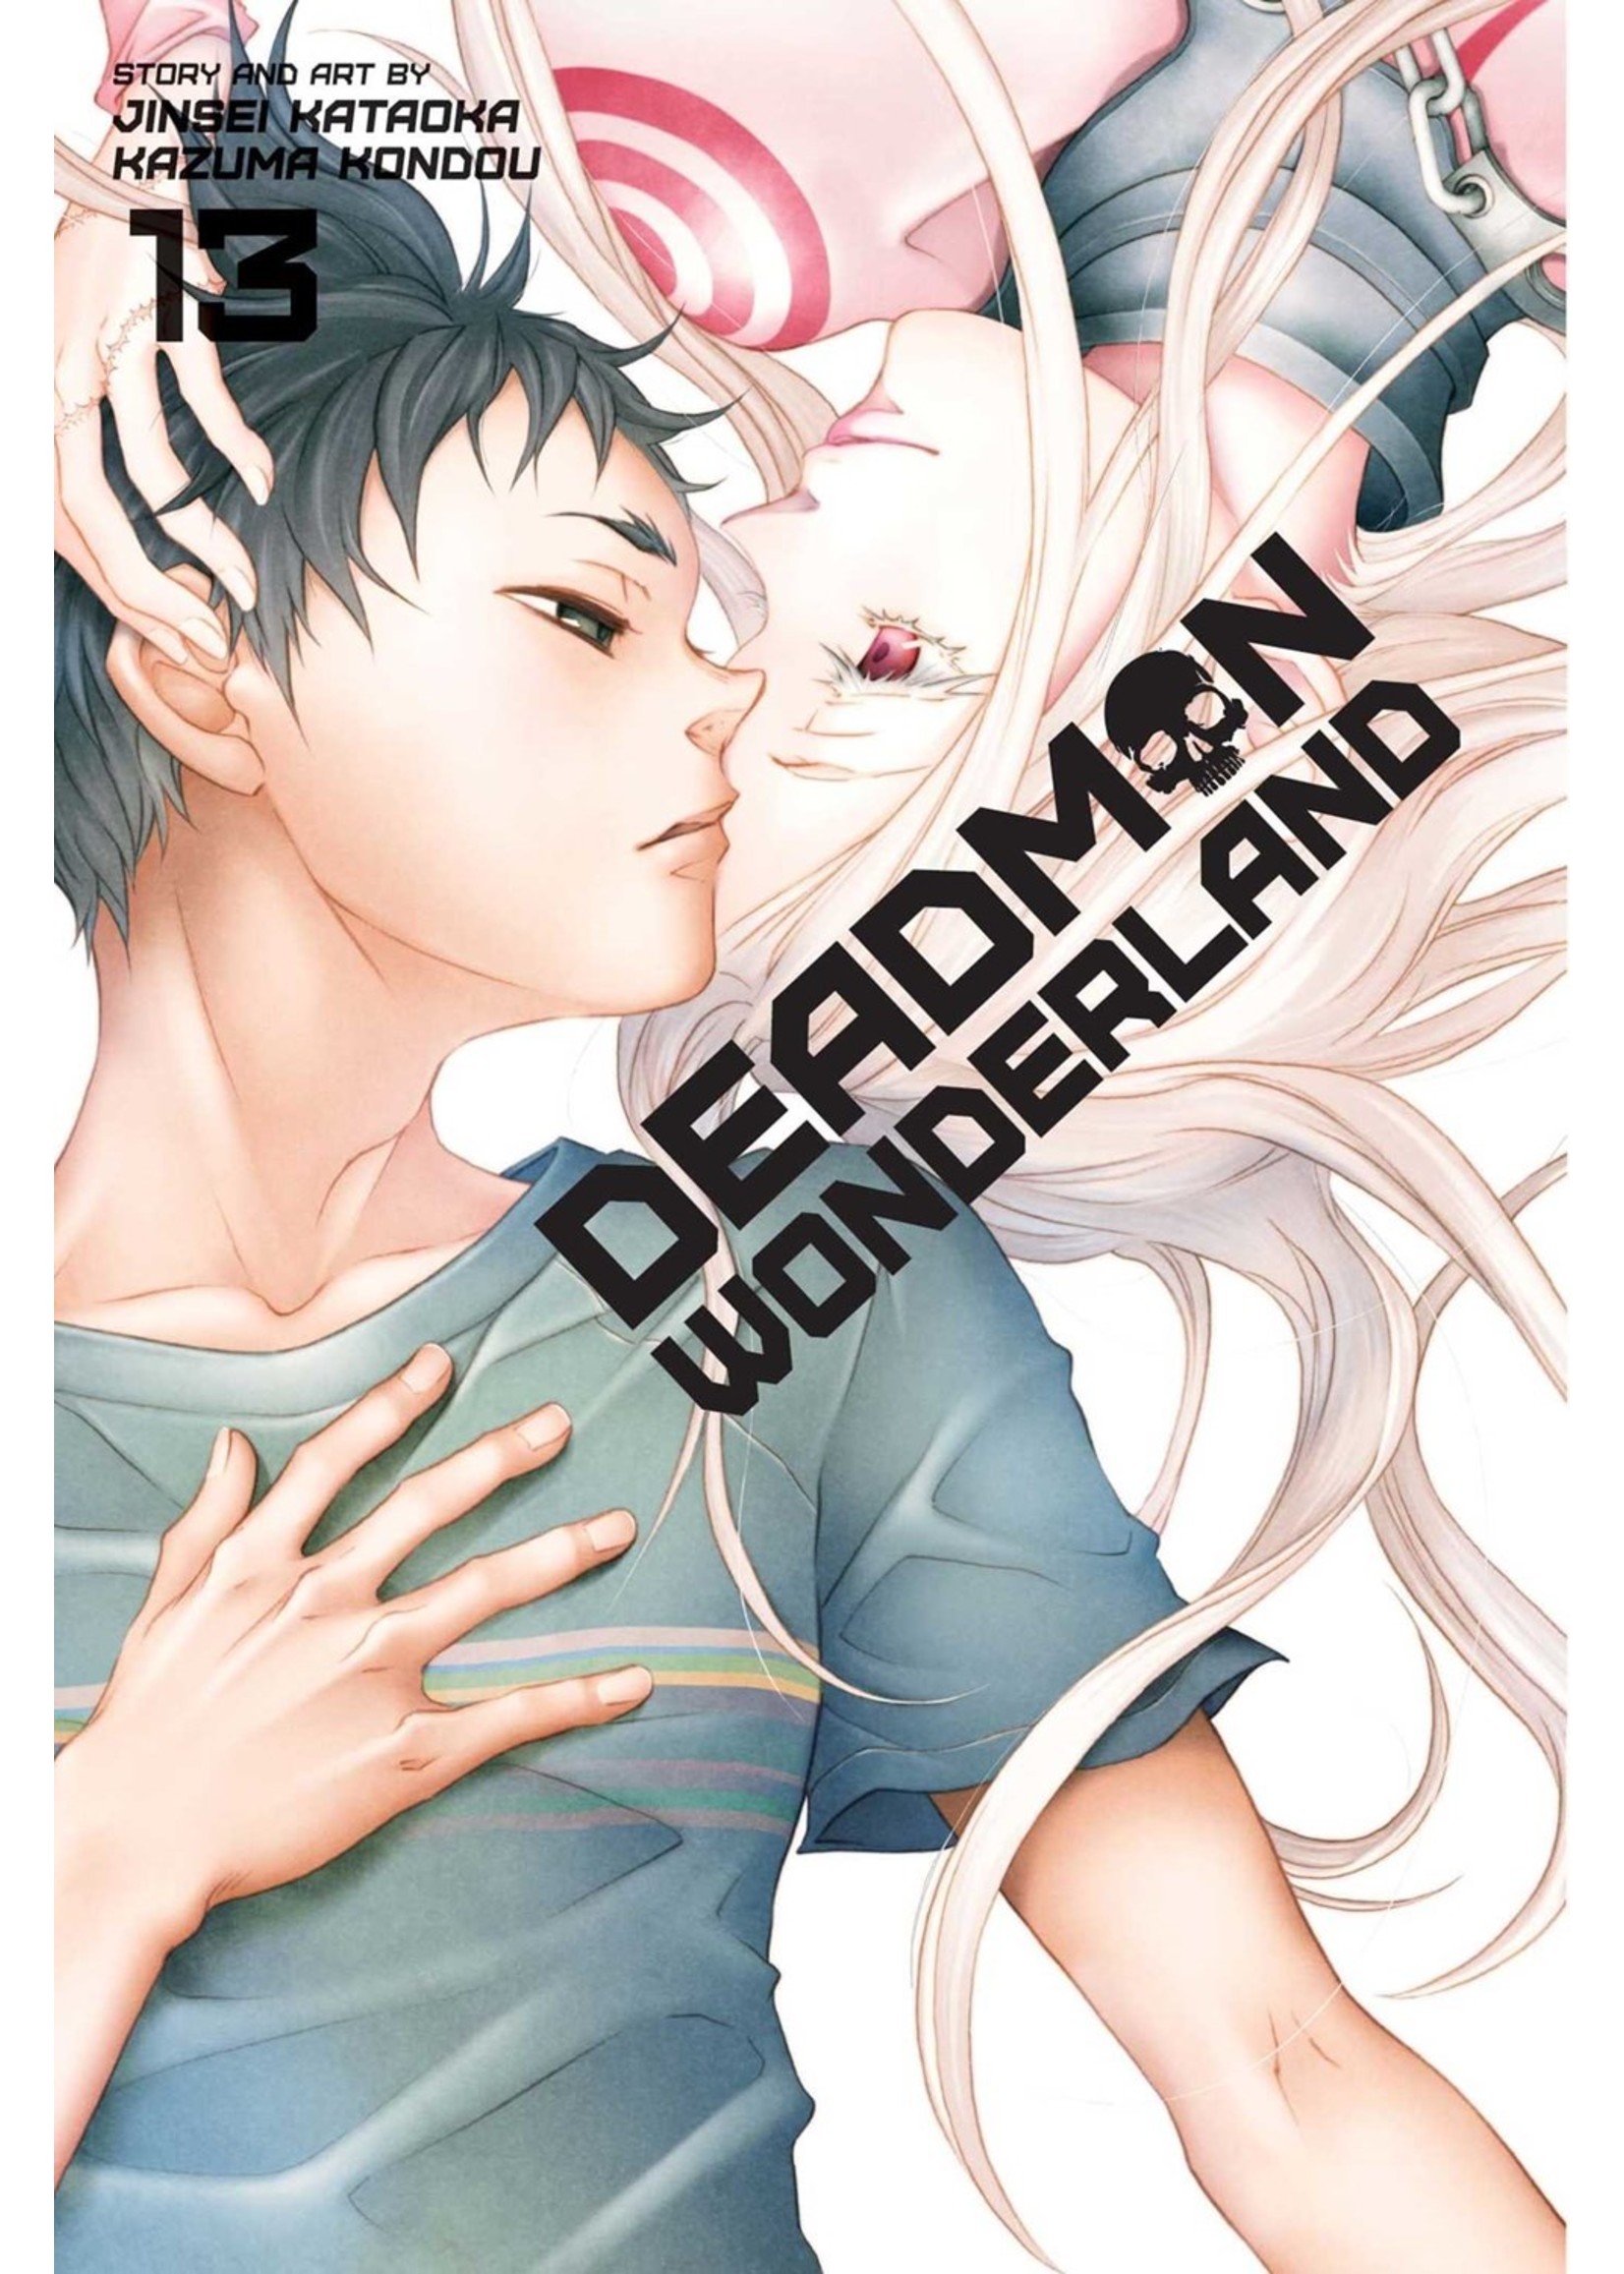 Manga DEADMAN WONDERLAND V13